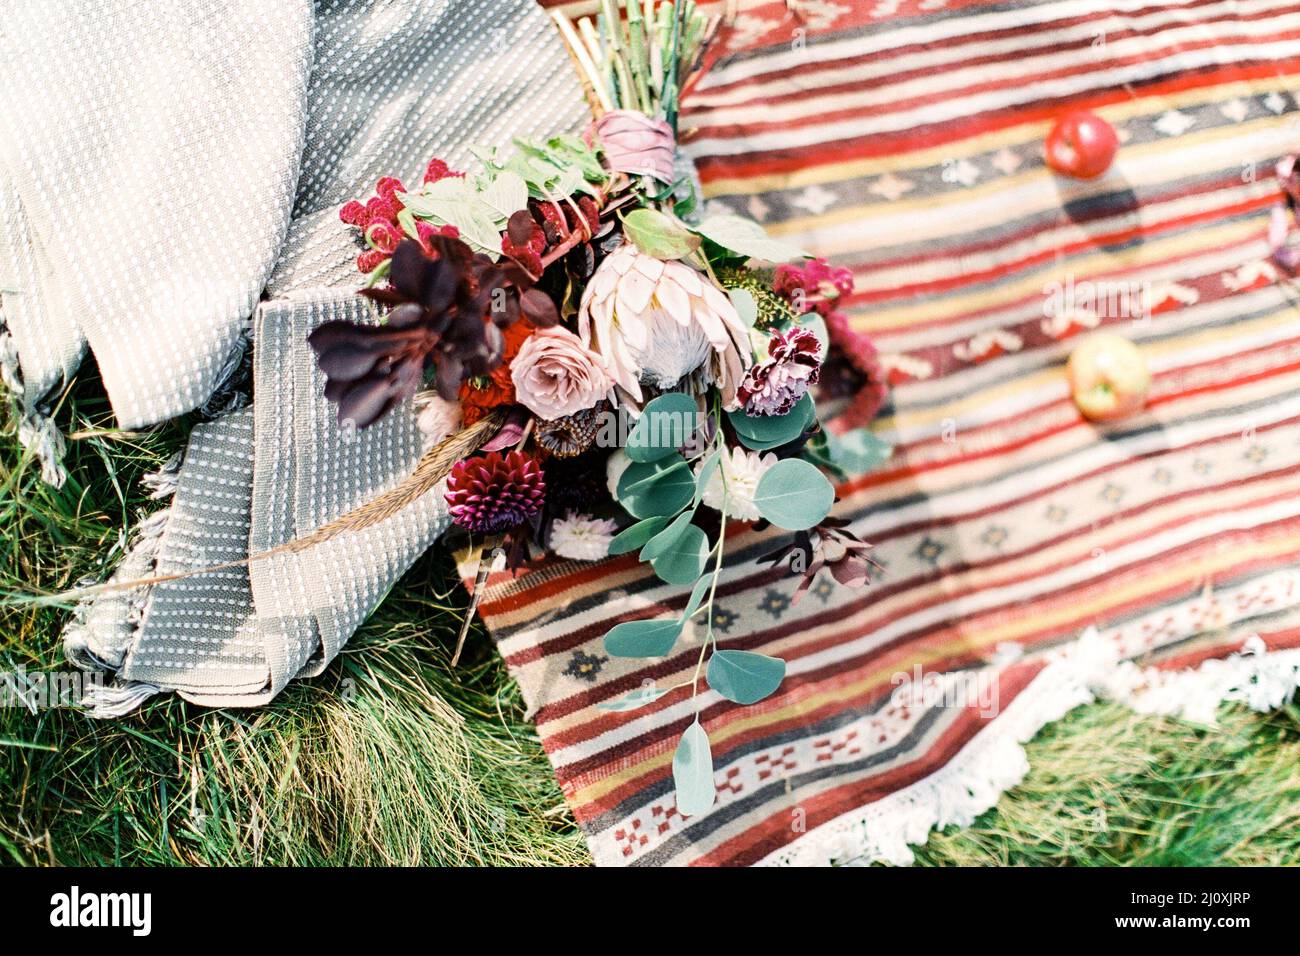 Wedding bouquet lies on a homespun bedspread Stock Photo